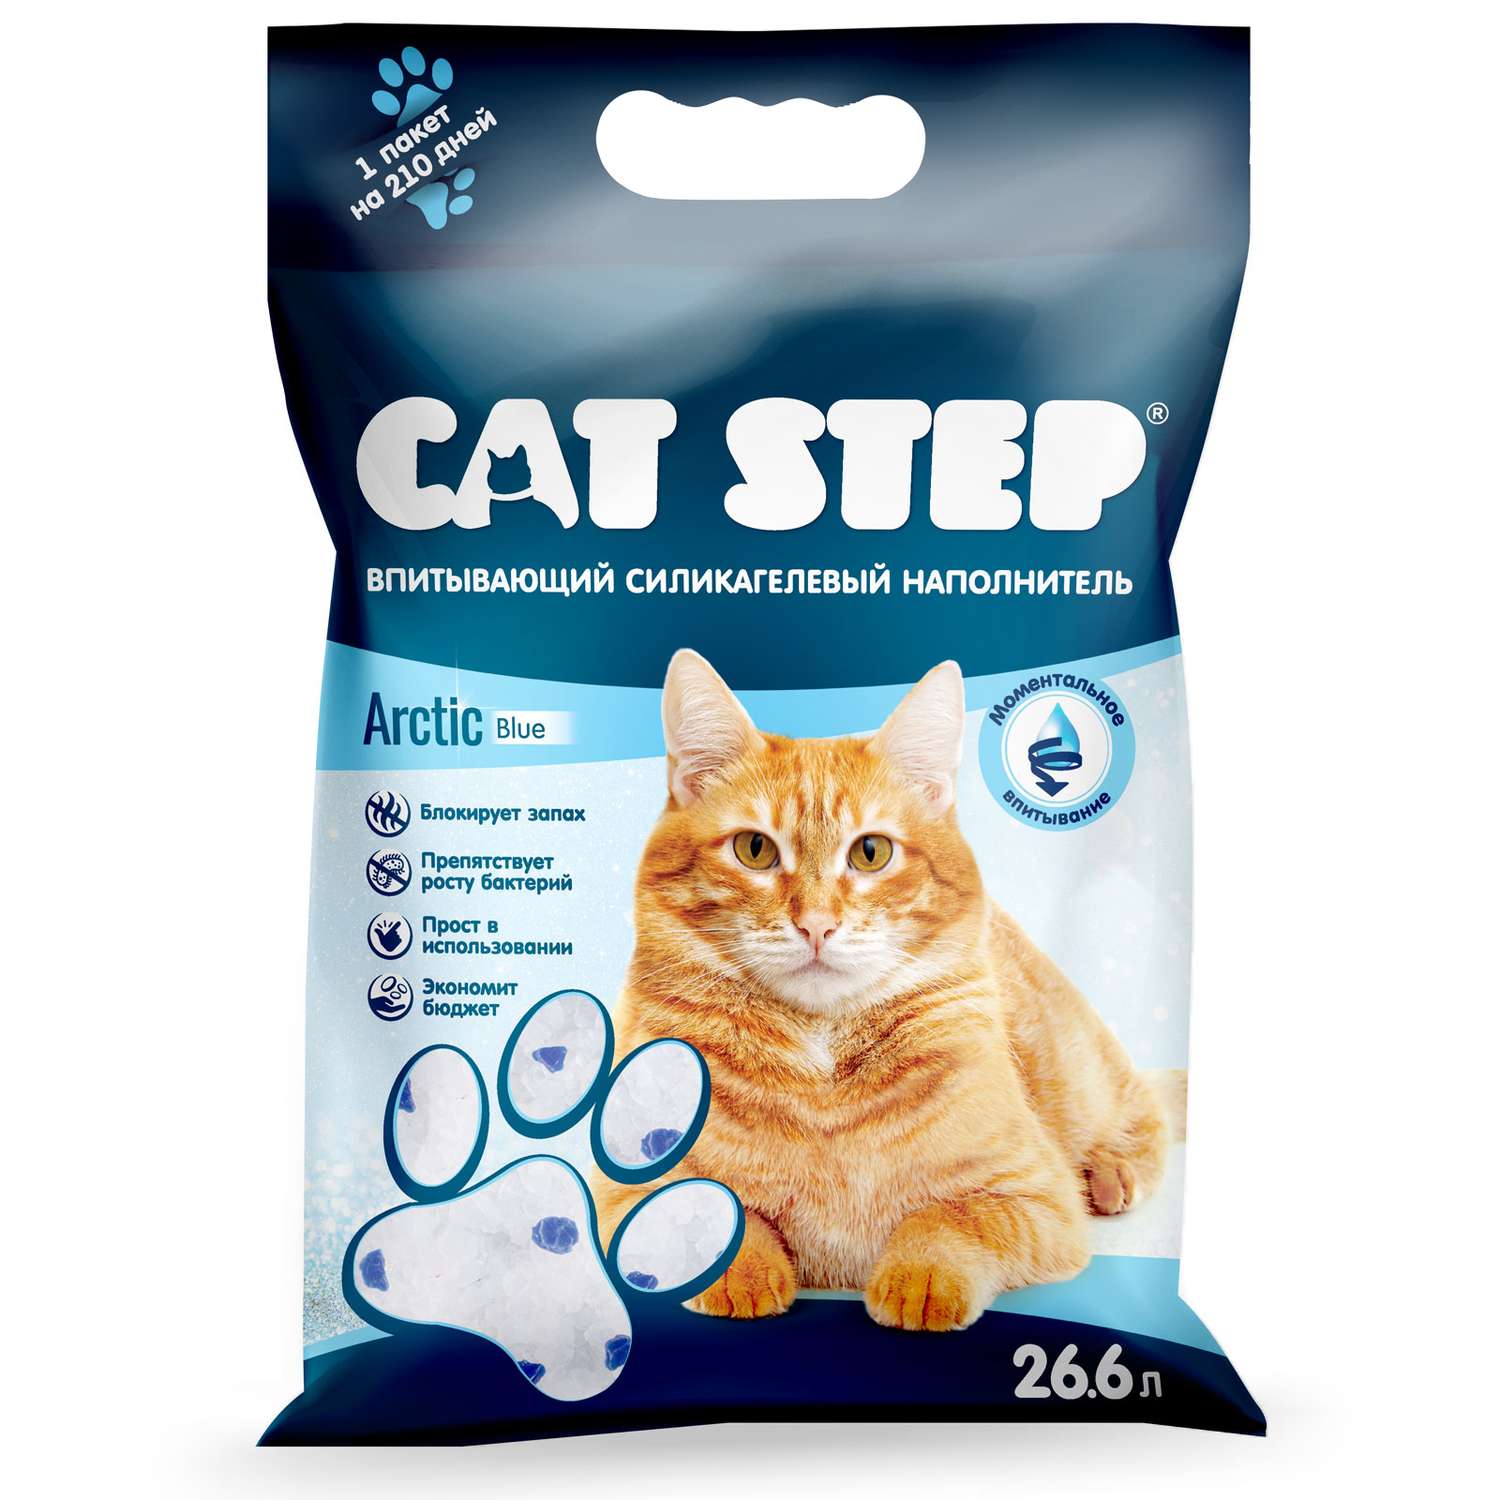 Наполнитель для кошек Cat Step Arctic Blue впитывающий силикагелевый 26.6л - фото 2